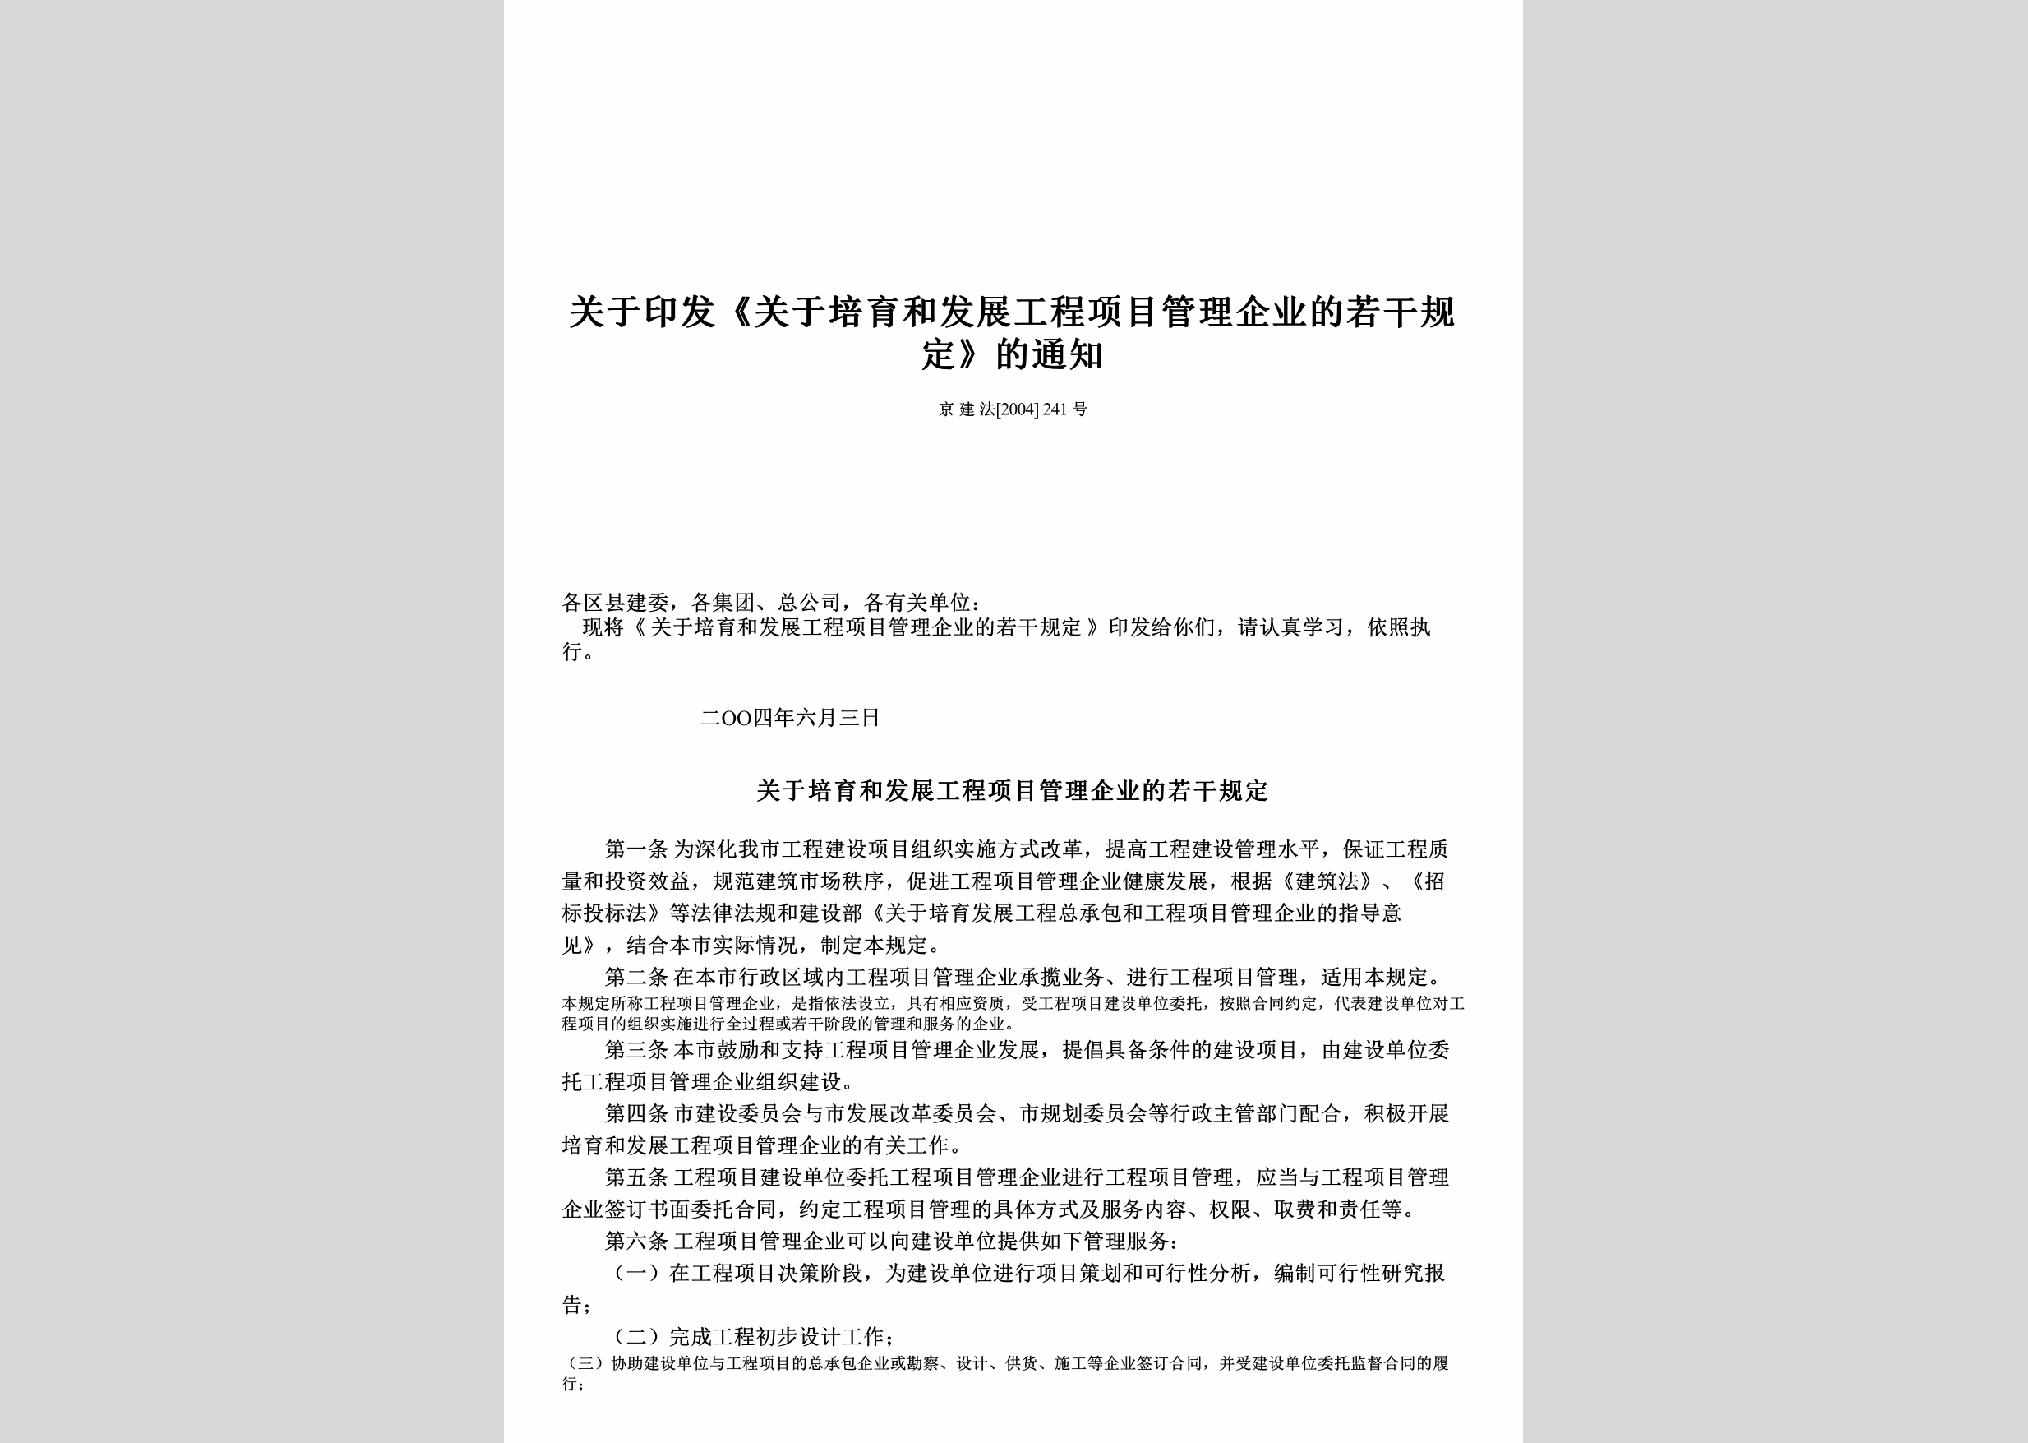 京建法[2004]241号：关于印发《关于培育和发展工程项目管理企业的若干规定》的通知